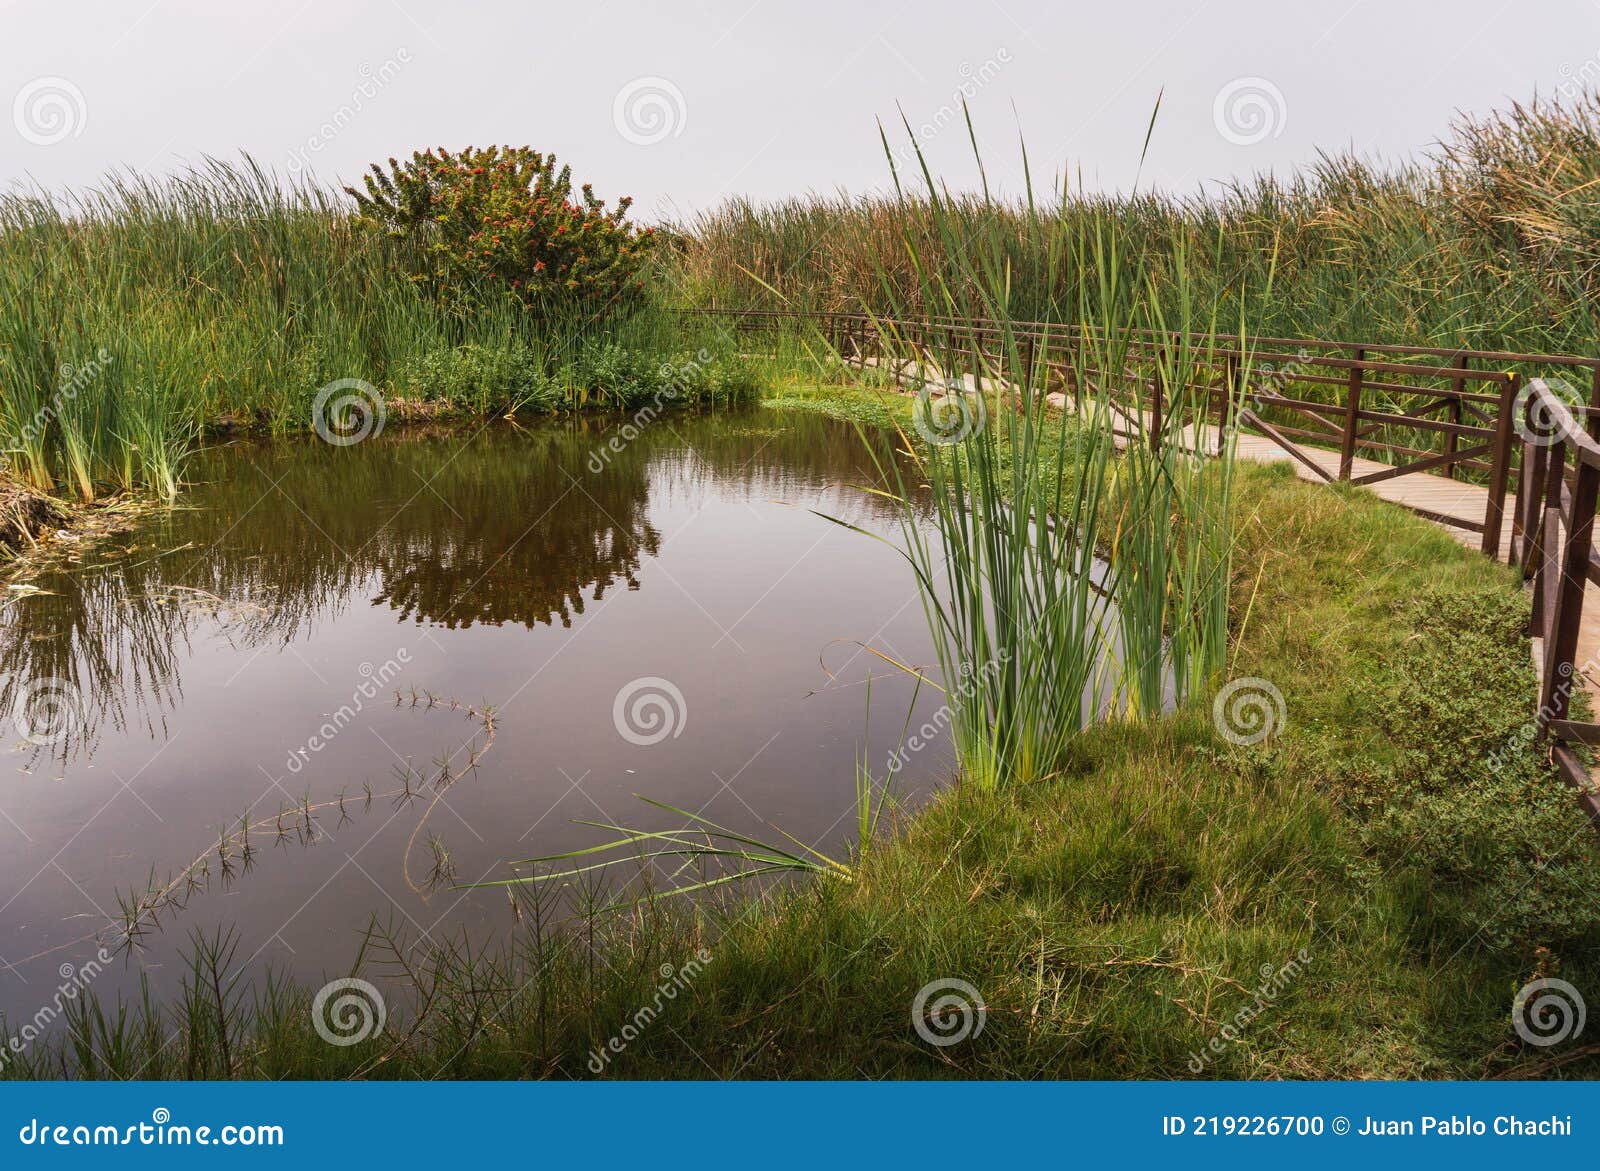 pond in pantanos de villa chorrillos lima peru